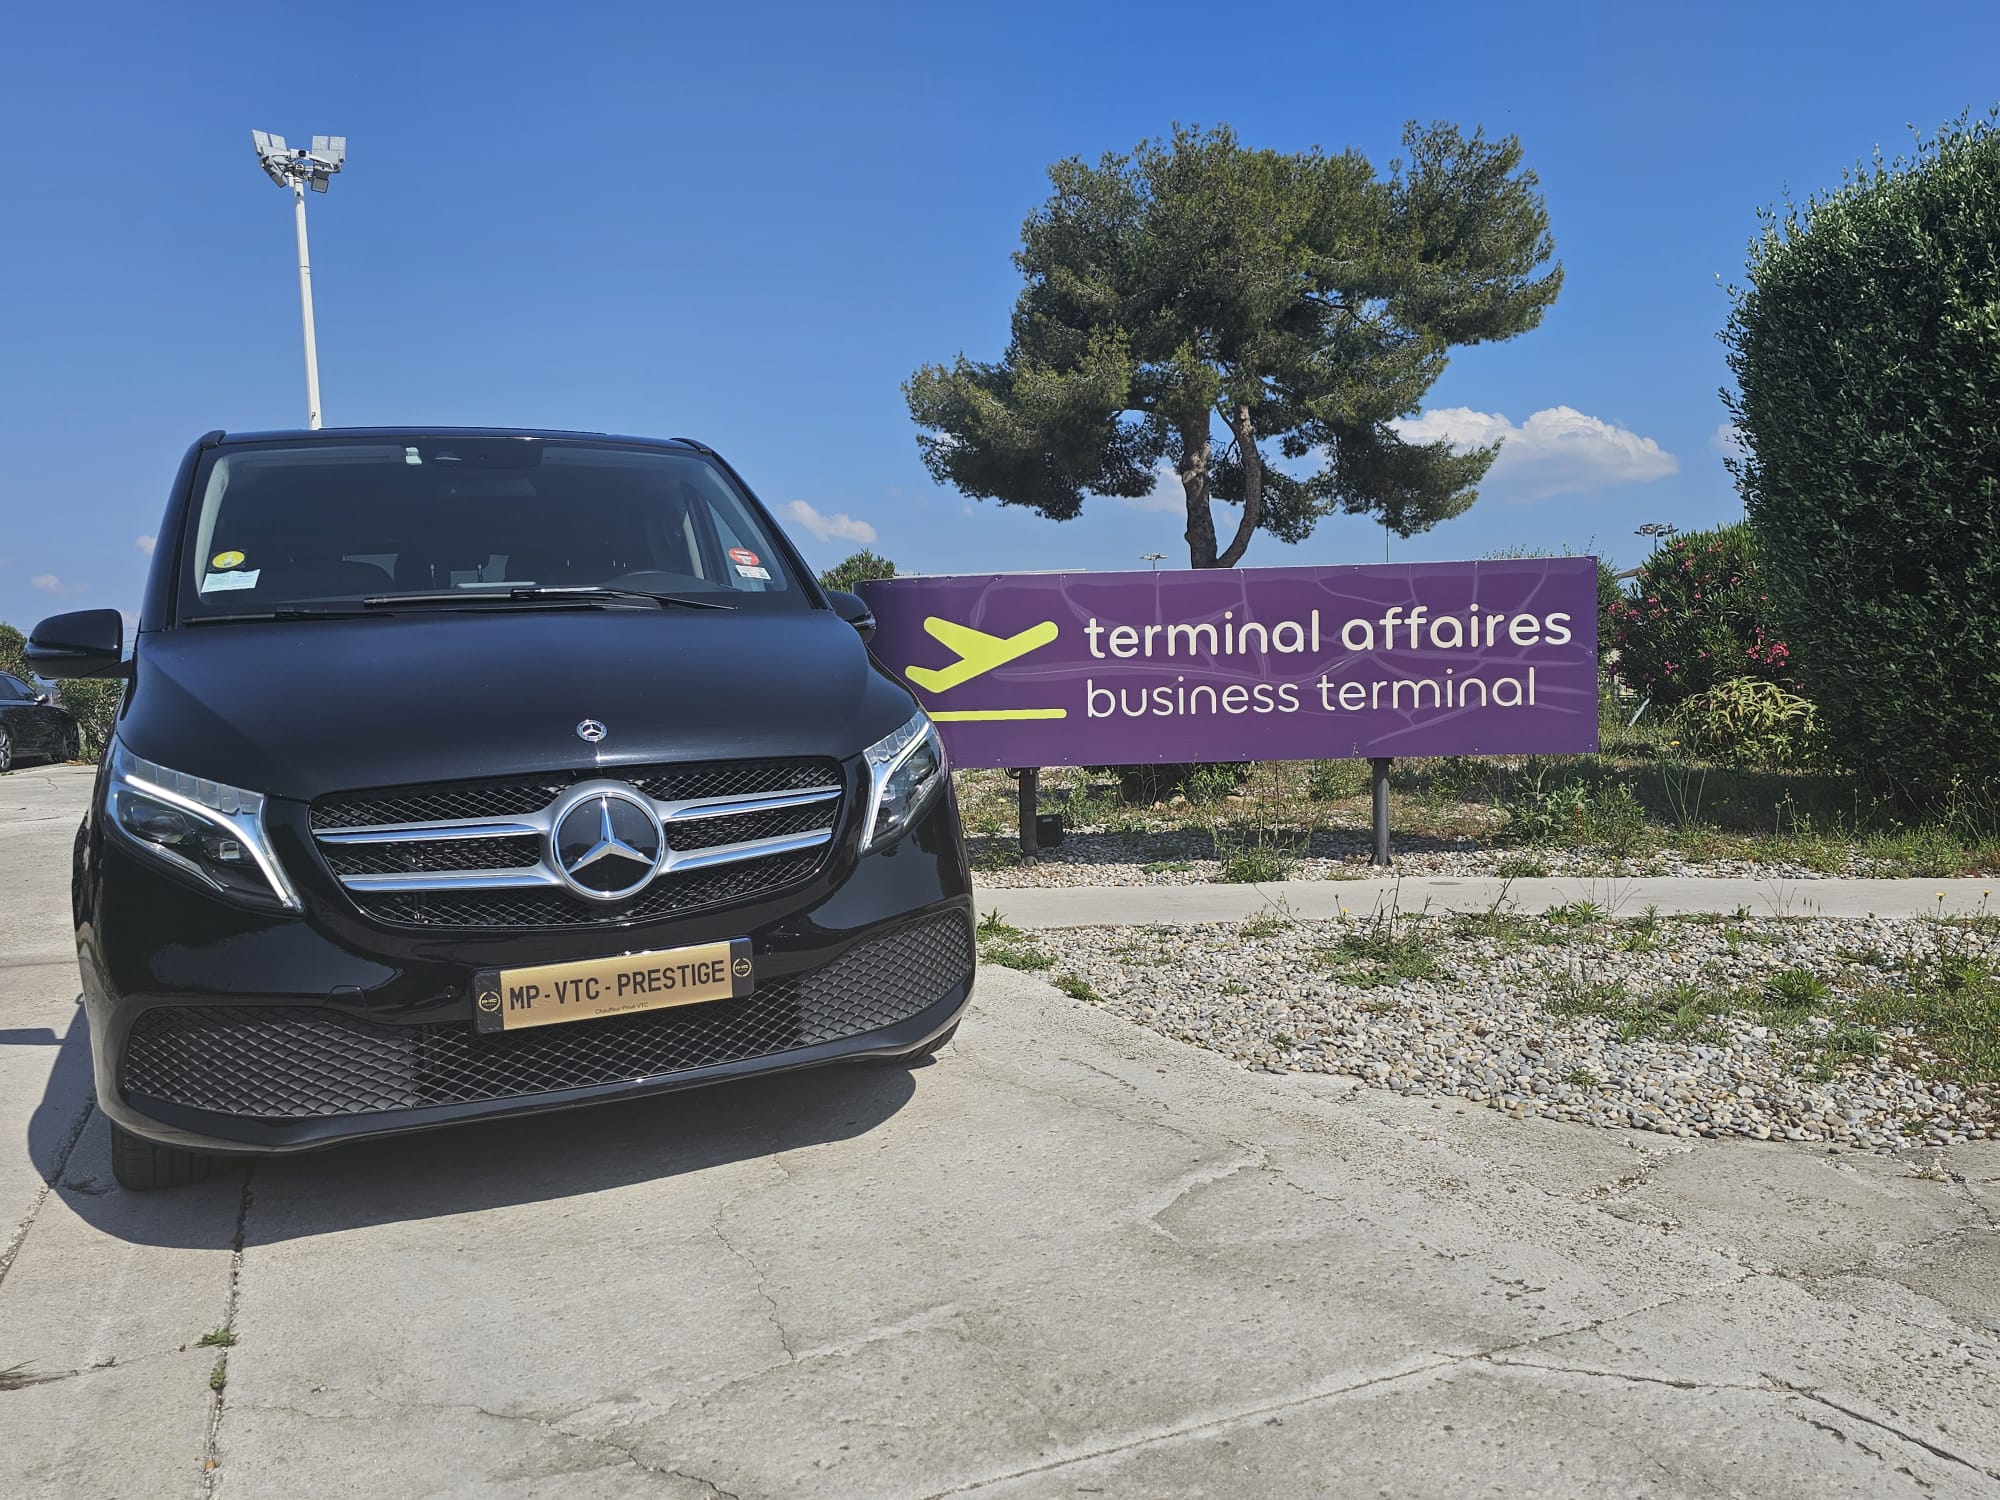 Aéroport Toulon Hyères à Belambra Les criques Hyères - Presqu'ile de Giens